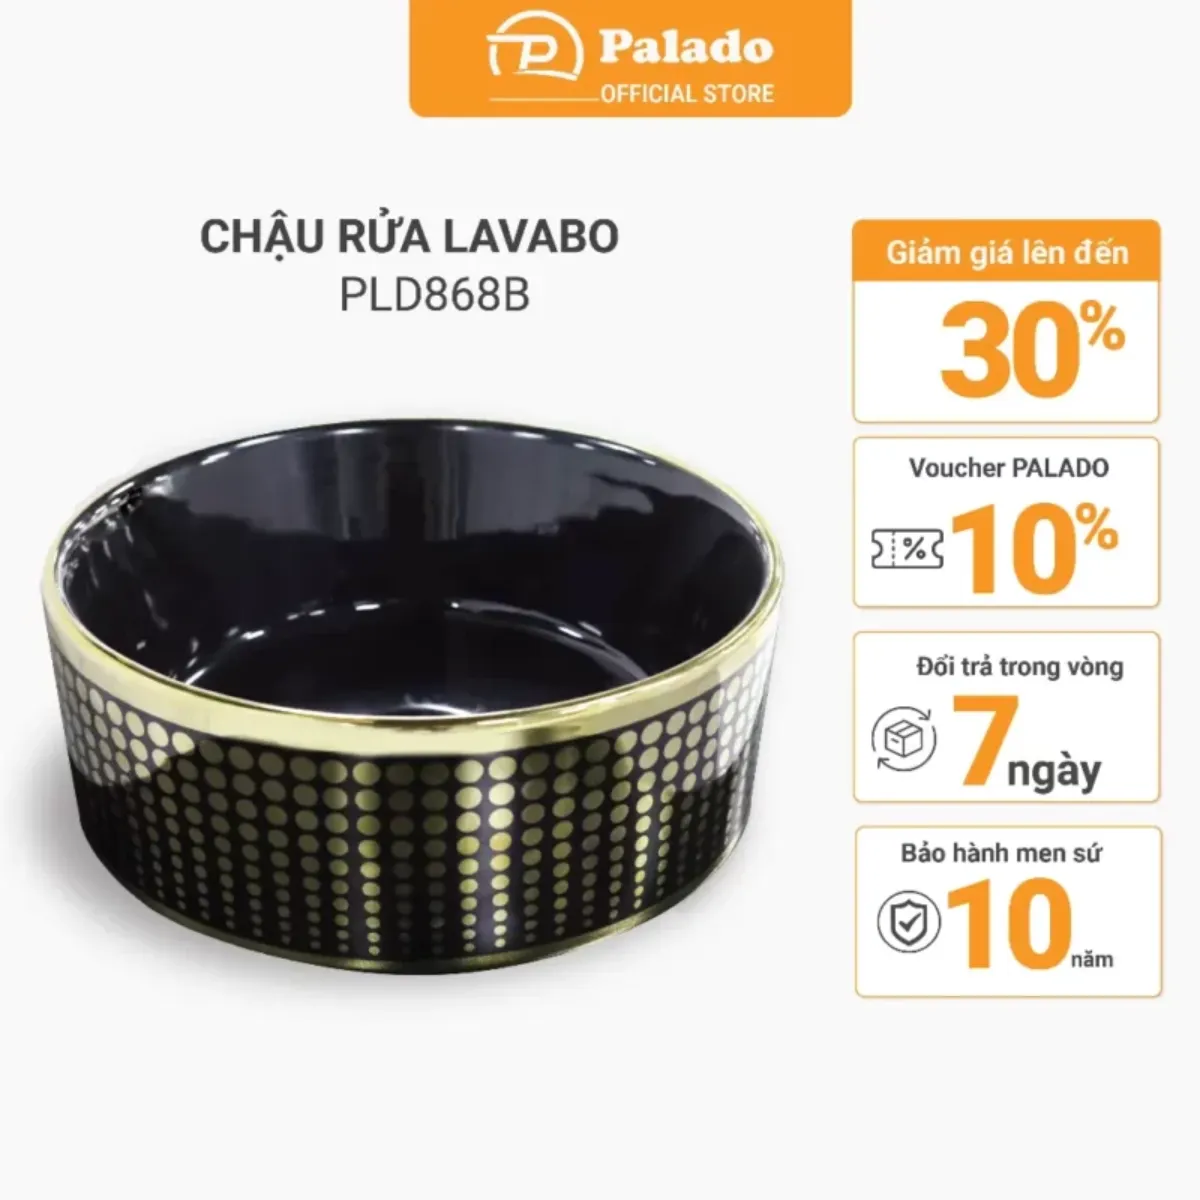 Đặc điểm của bộ chậu rửa Lavabo dương bàn Palado PLD868B